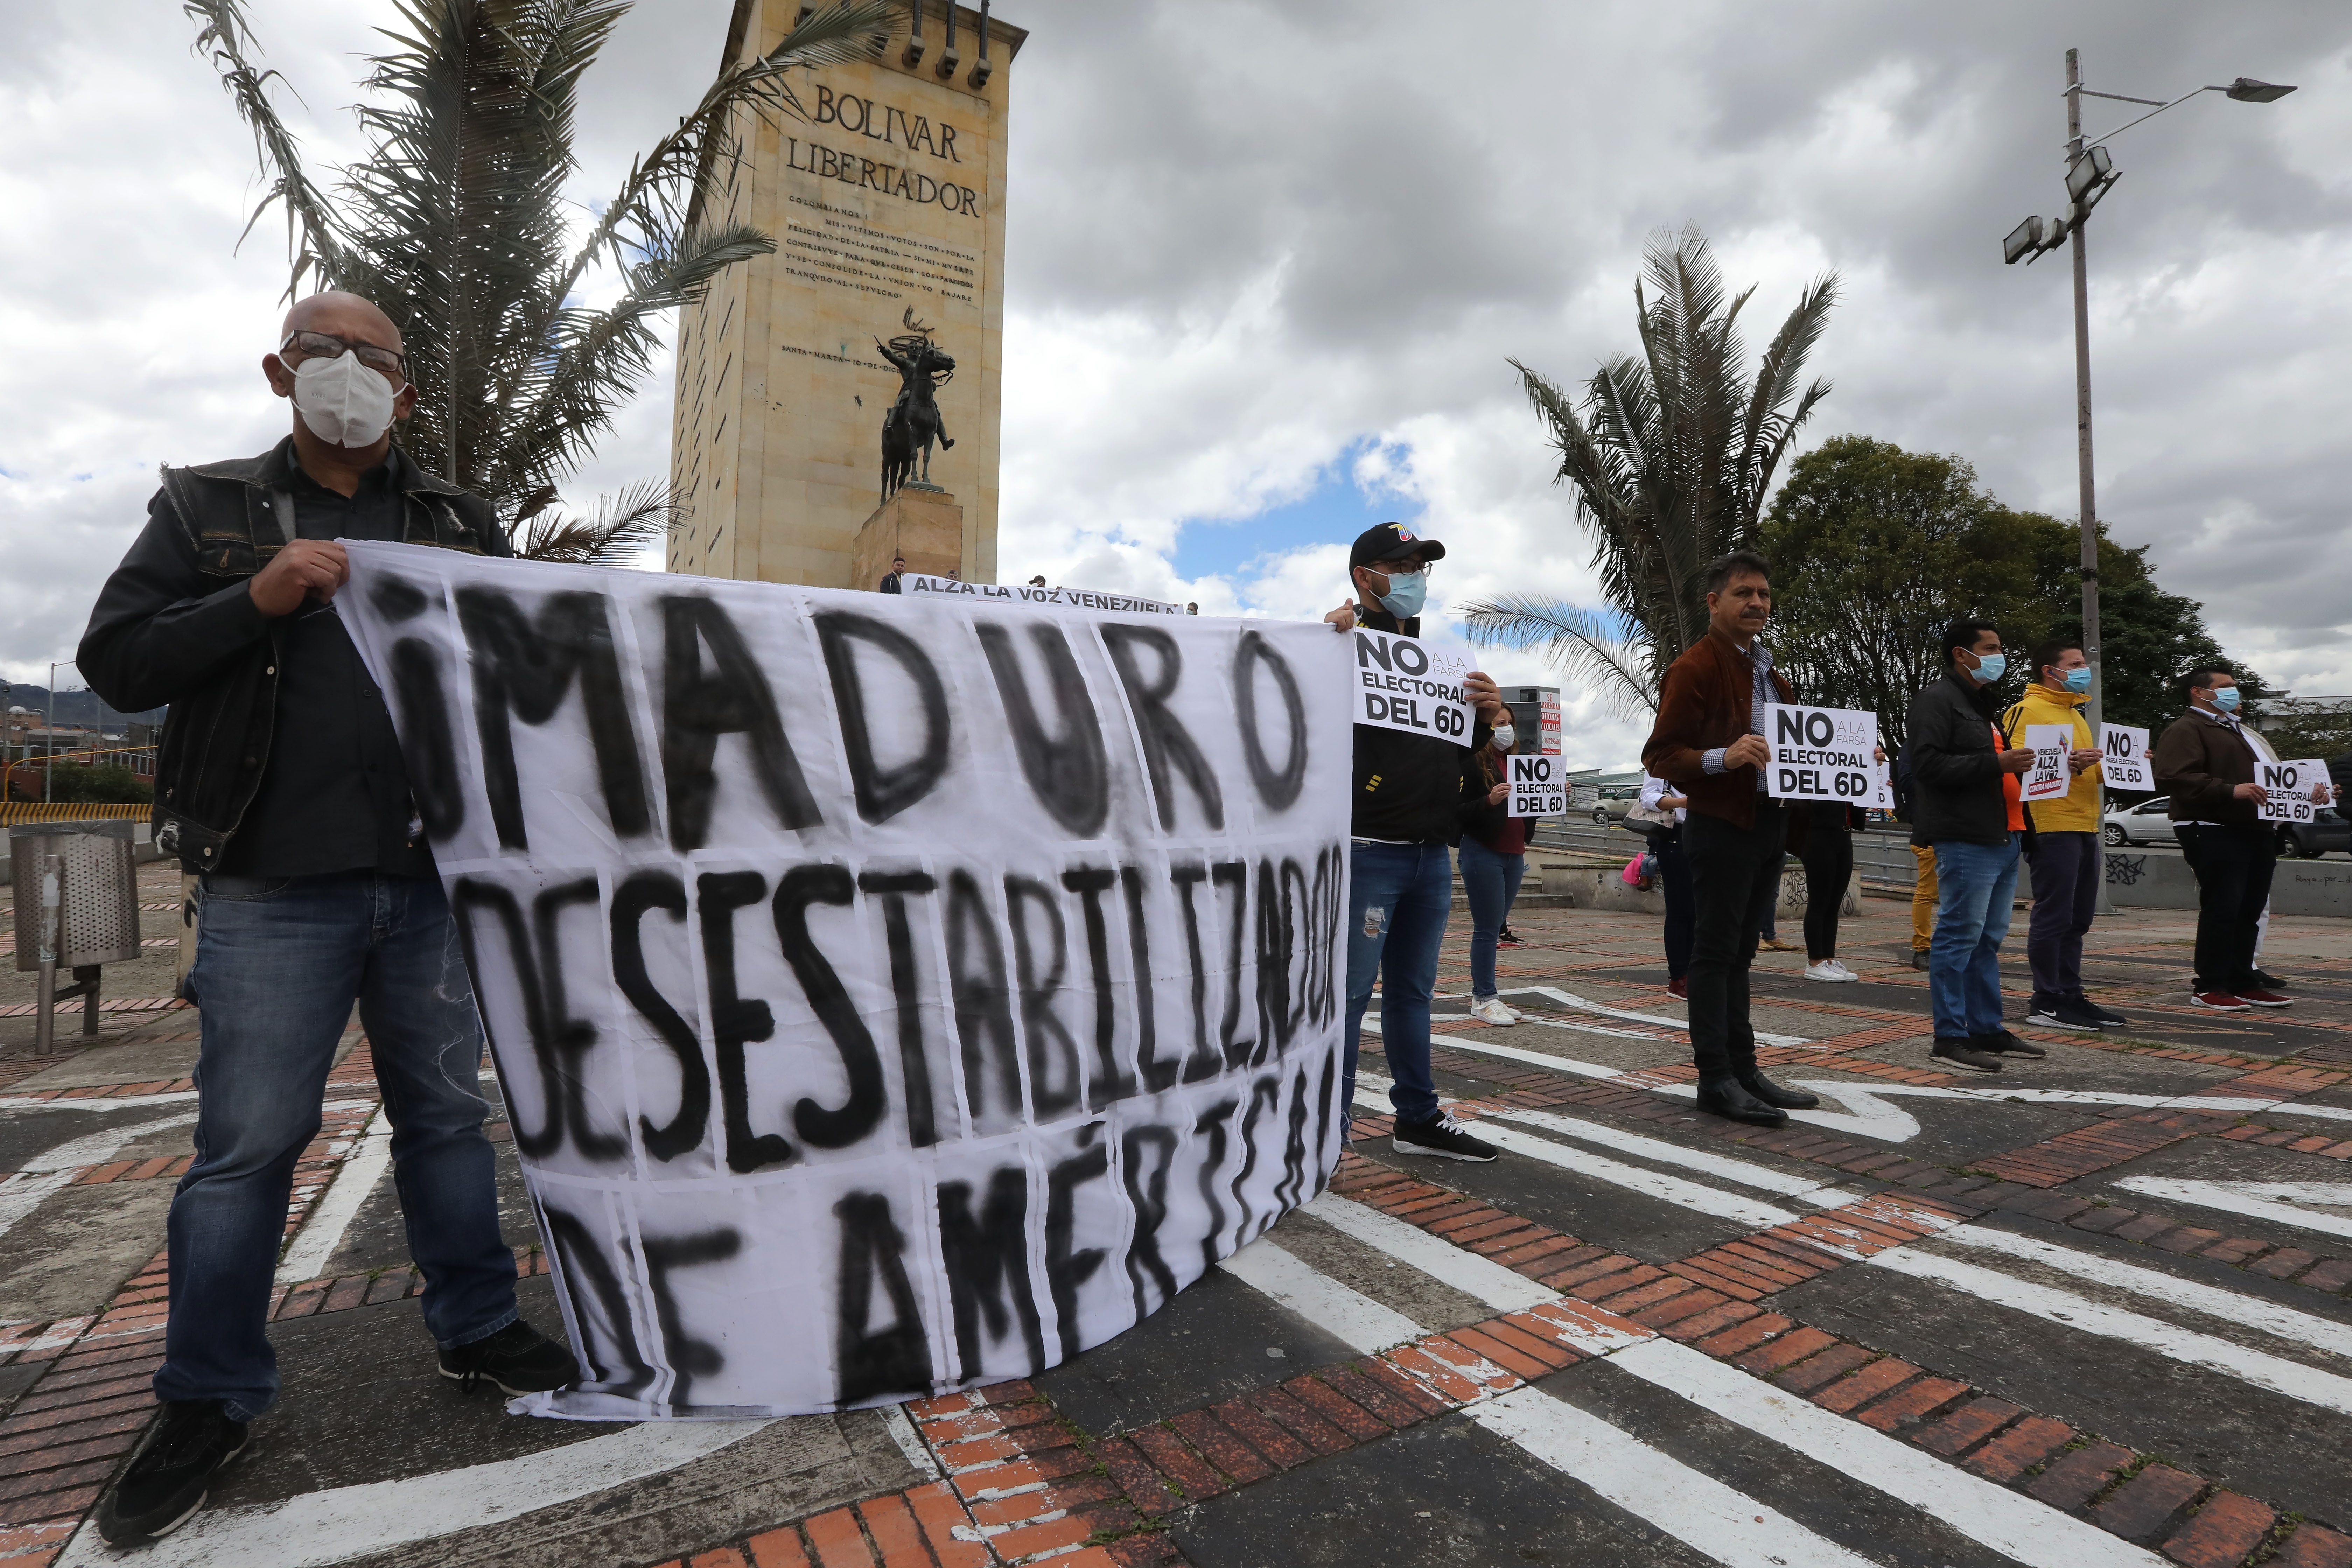 La comunidad internacional rechazó el fraude electoral del régimen de Maduro